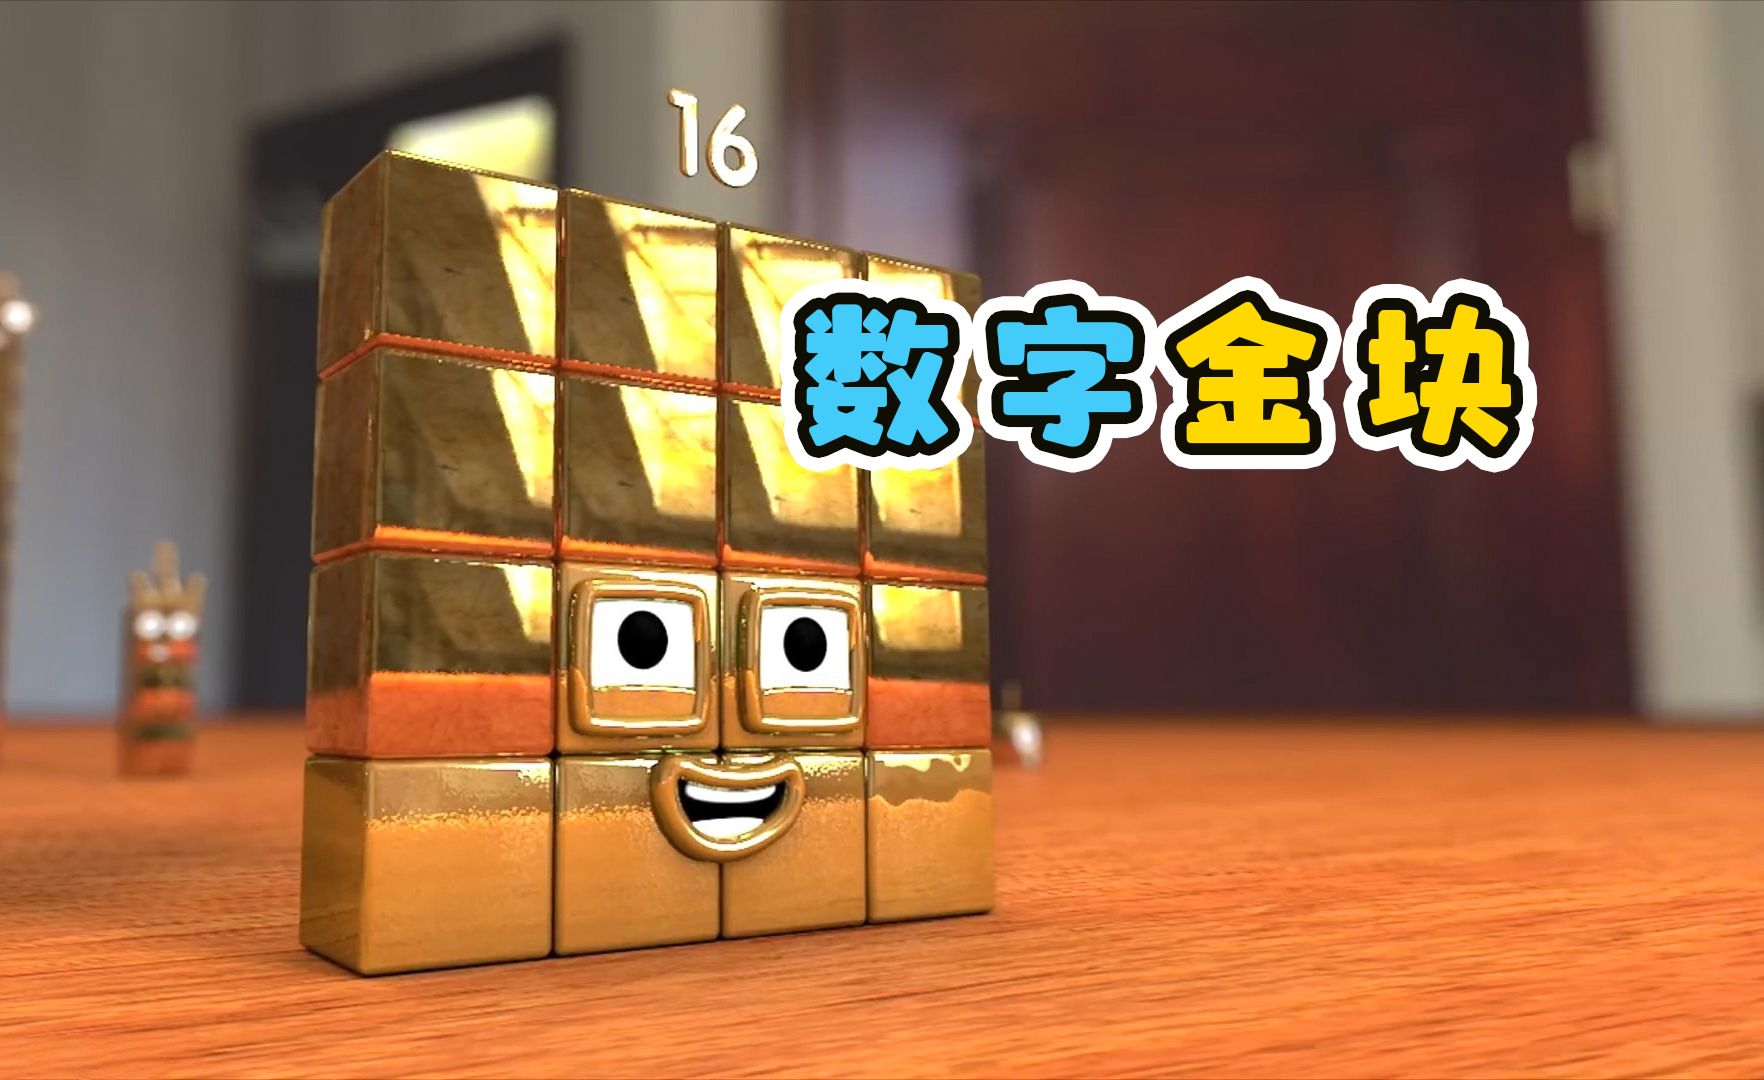 数字方块找到金子，变成数字金块。益智动画